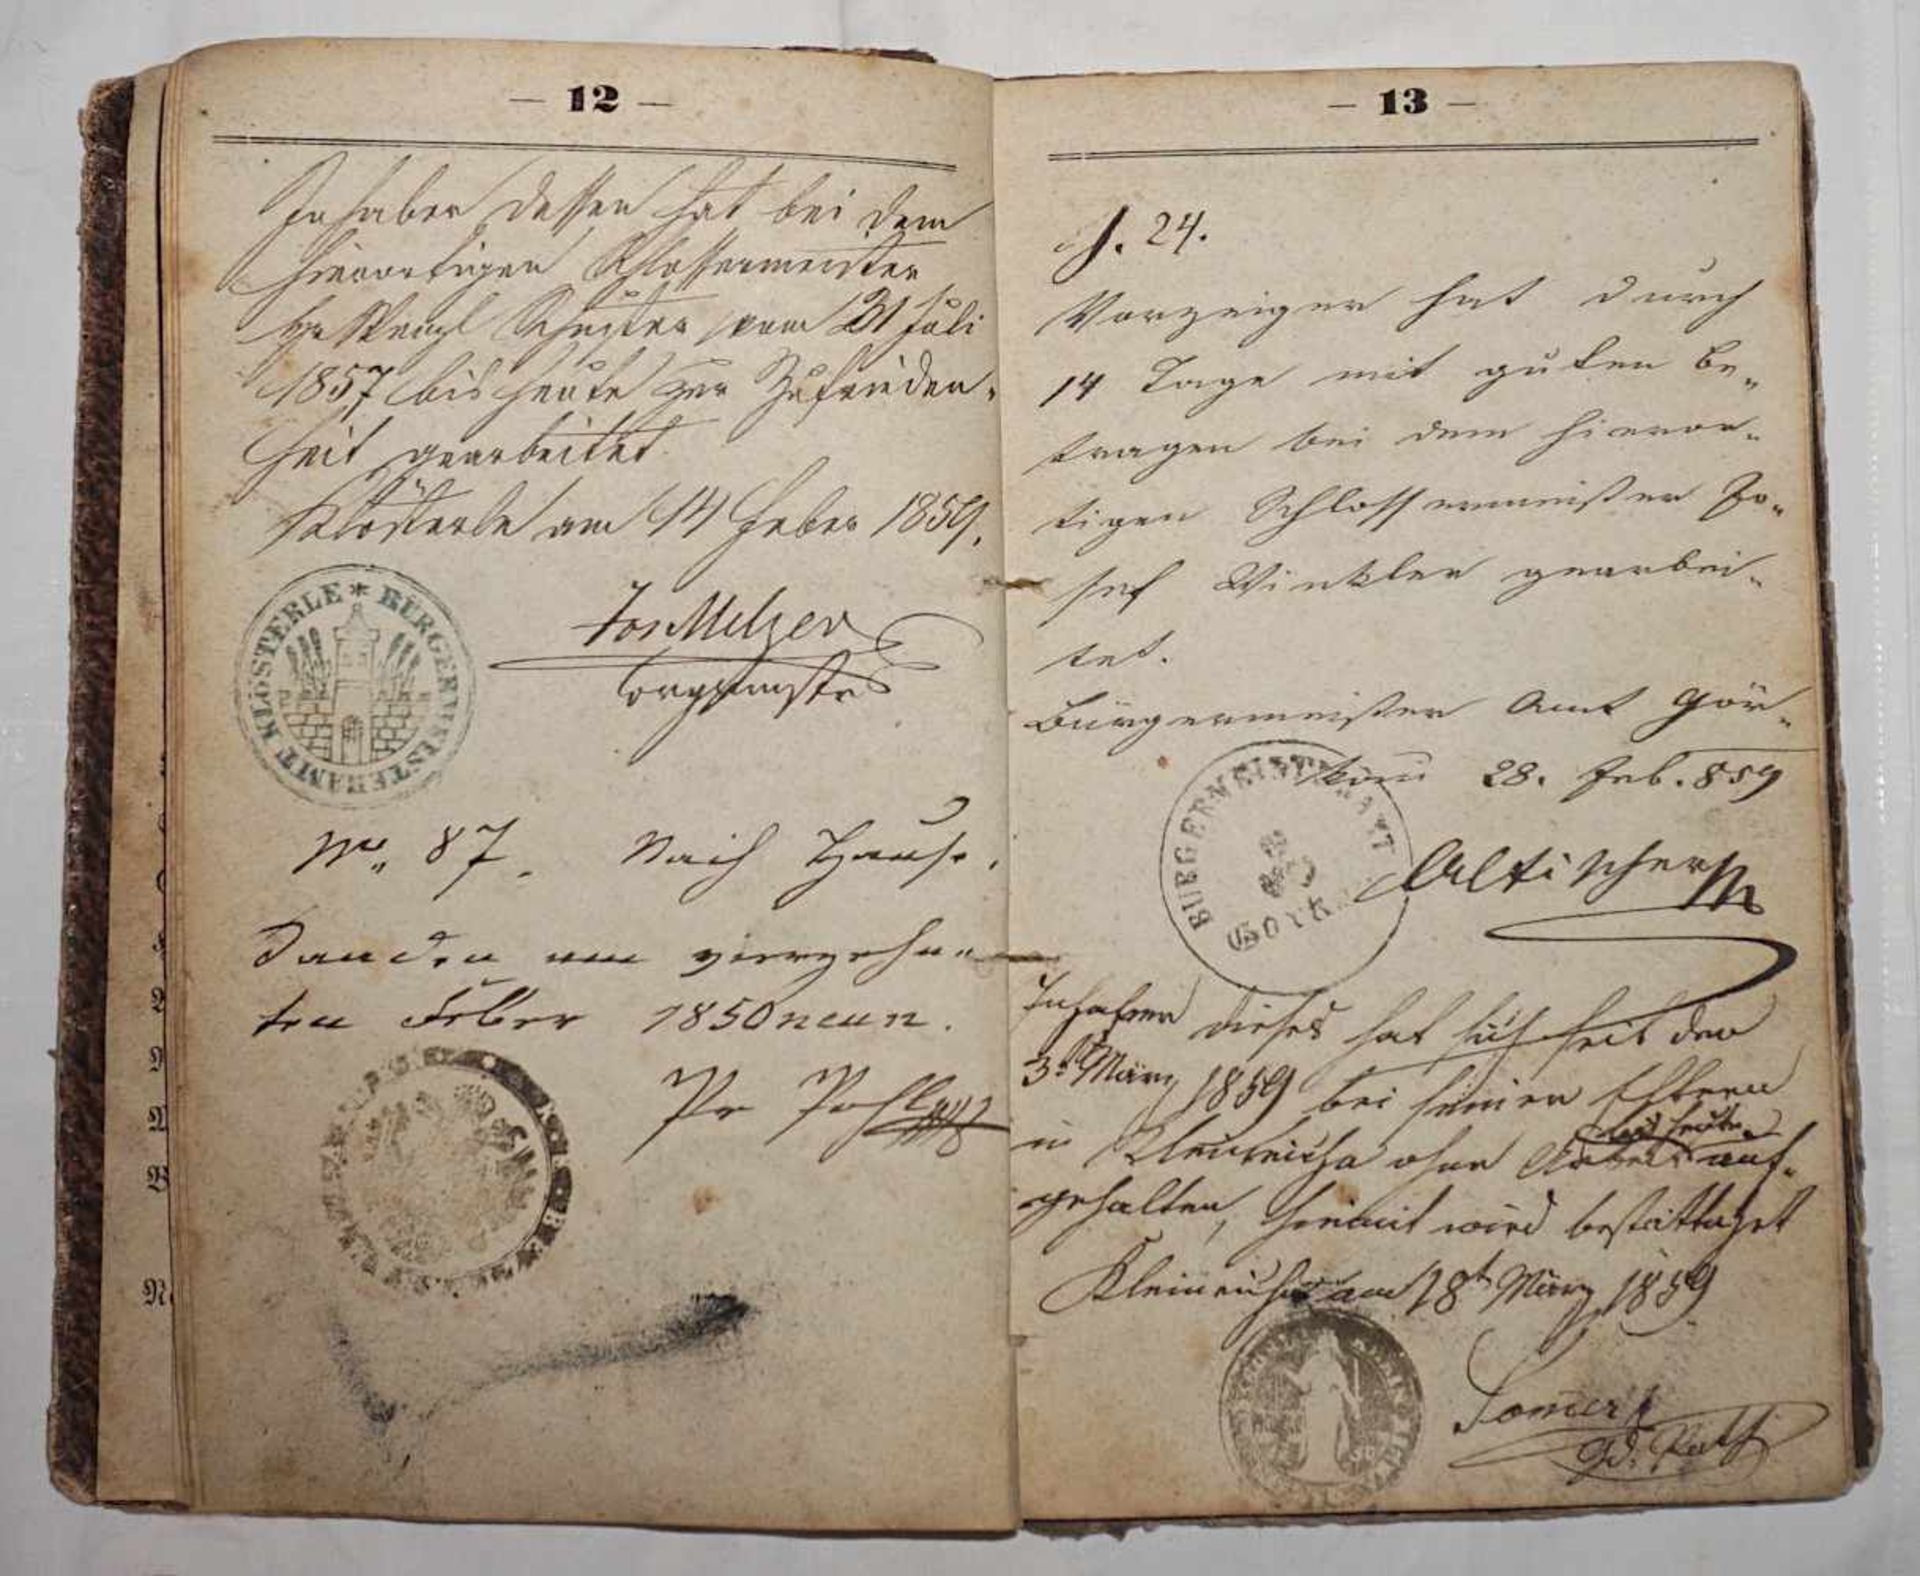 1 Wanderbuch, Statthalterei-Druckerei Prag dat. 1827mit Belehrungen, Beglaubigungsstem - Image 2 of 2